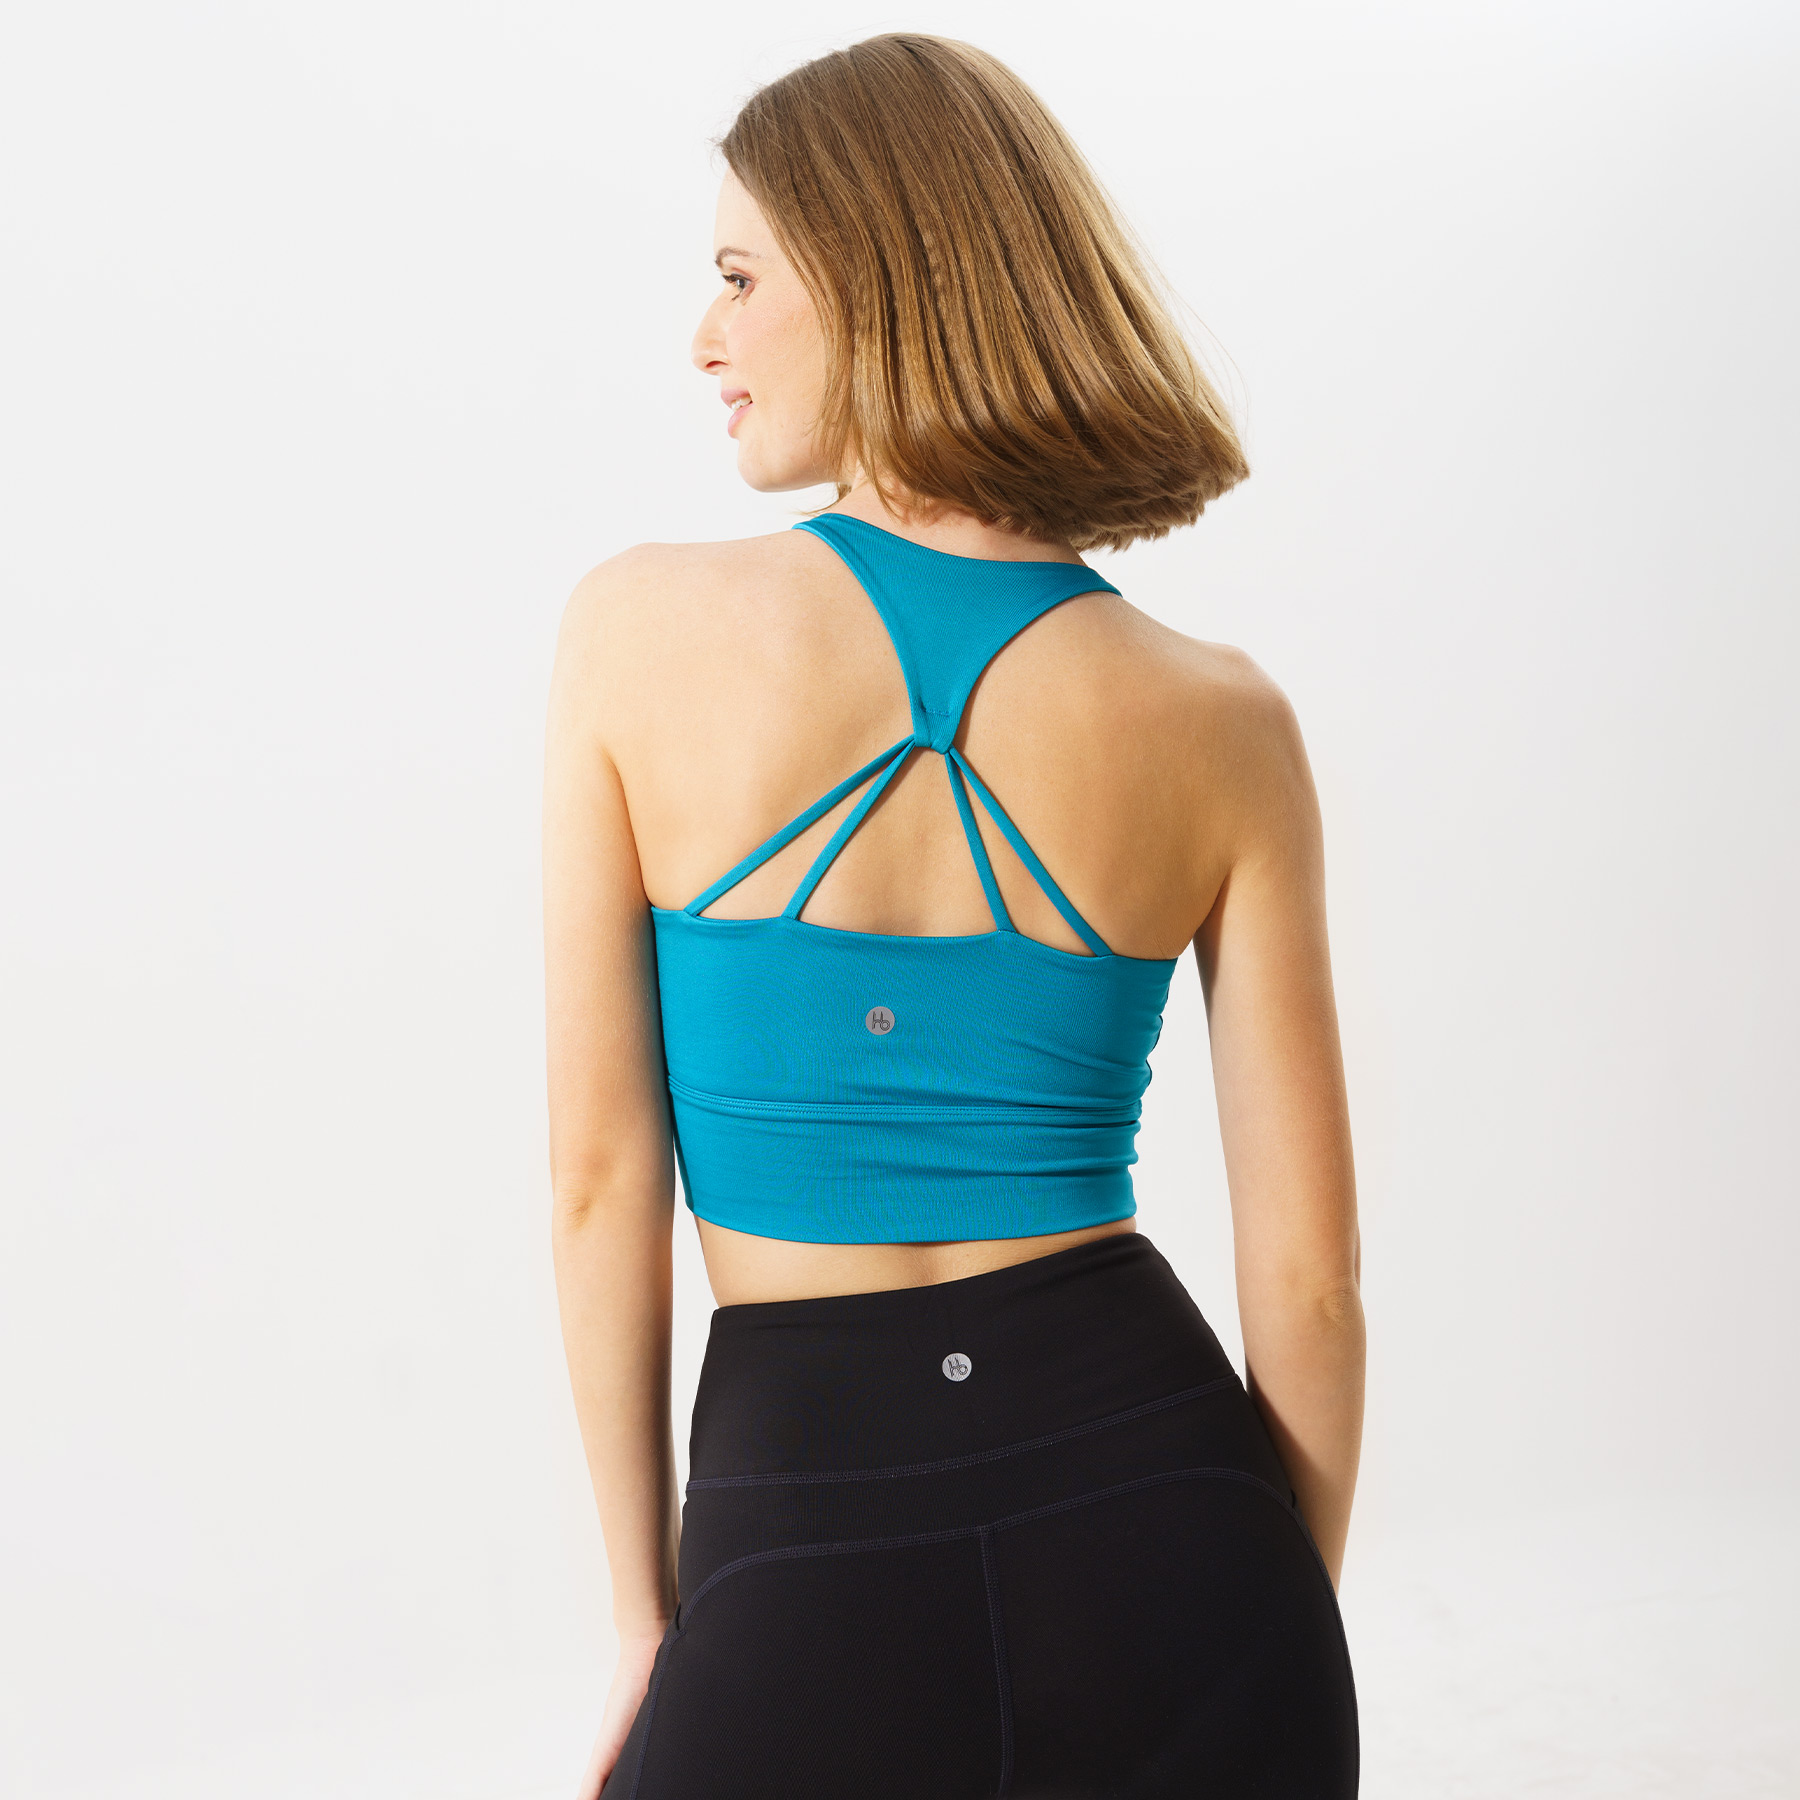 Áo tập Yoga Gym croptop 4 dây cho nữ Hibi Sports CR808 - Kèm mút nâng ngực